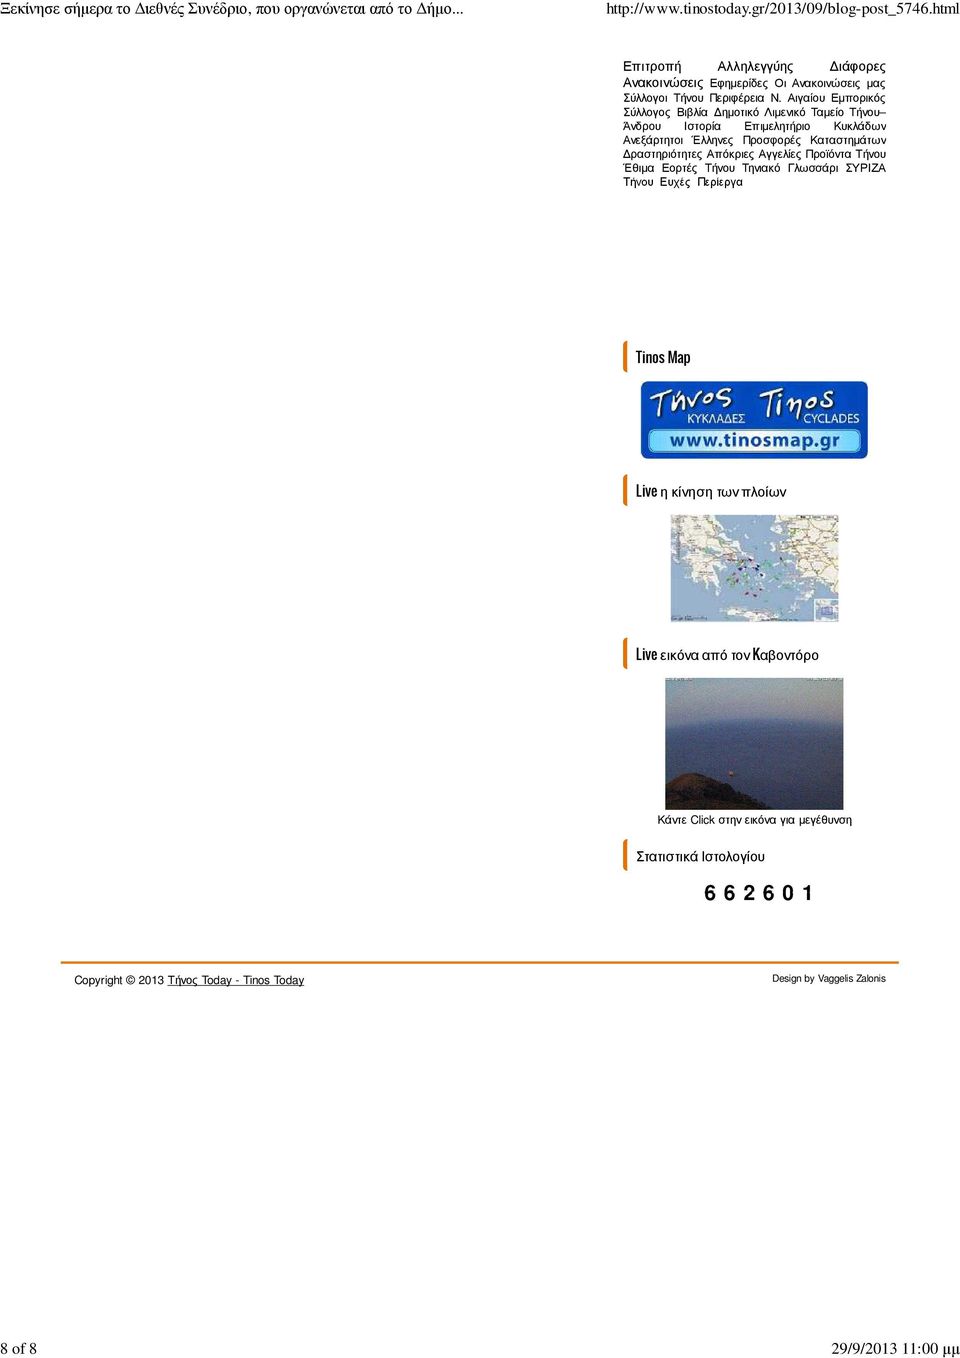 ραστηριότητες Απόκριες Αγγελίες Προϊόντα Τήνου Έθιµα Εορτές Τήνου Τηνιακό Γλωσσάρι ΣΥΡΙΖΑ Τήνου Ευχές Περίεργα Tinos Map Live η κίνηση των πλοίων